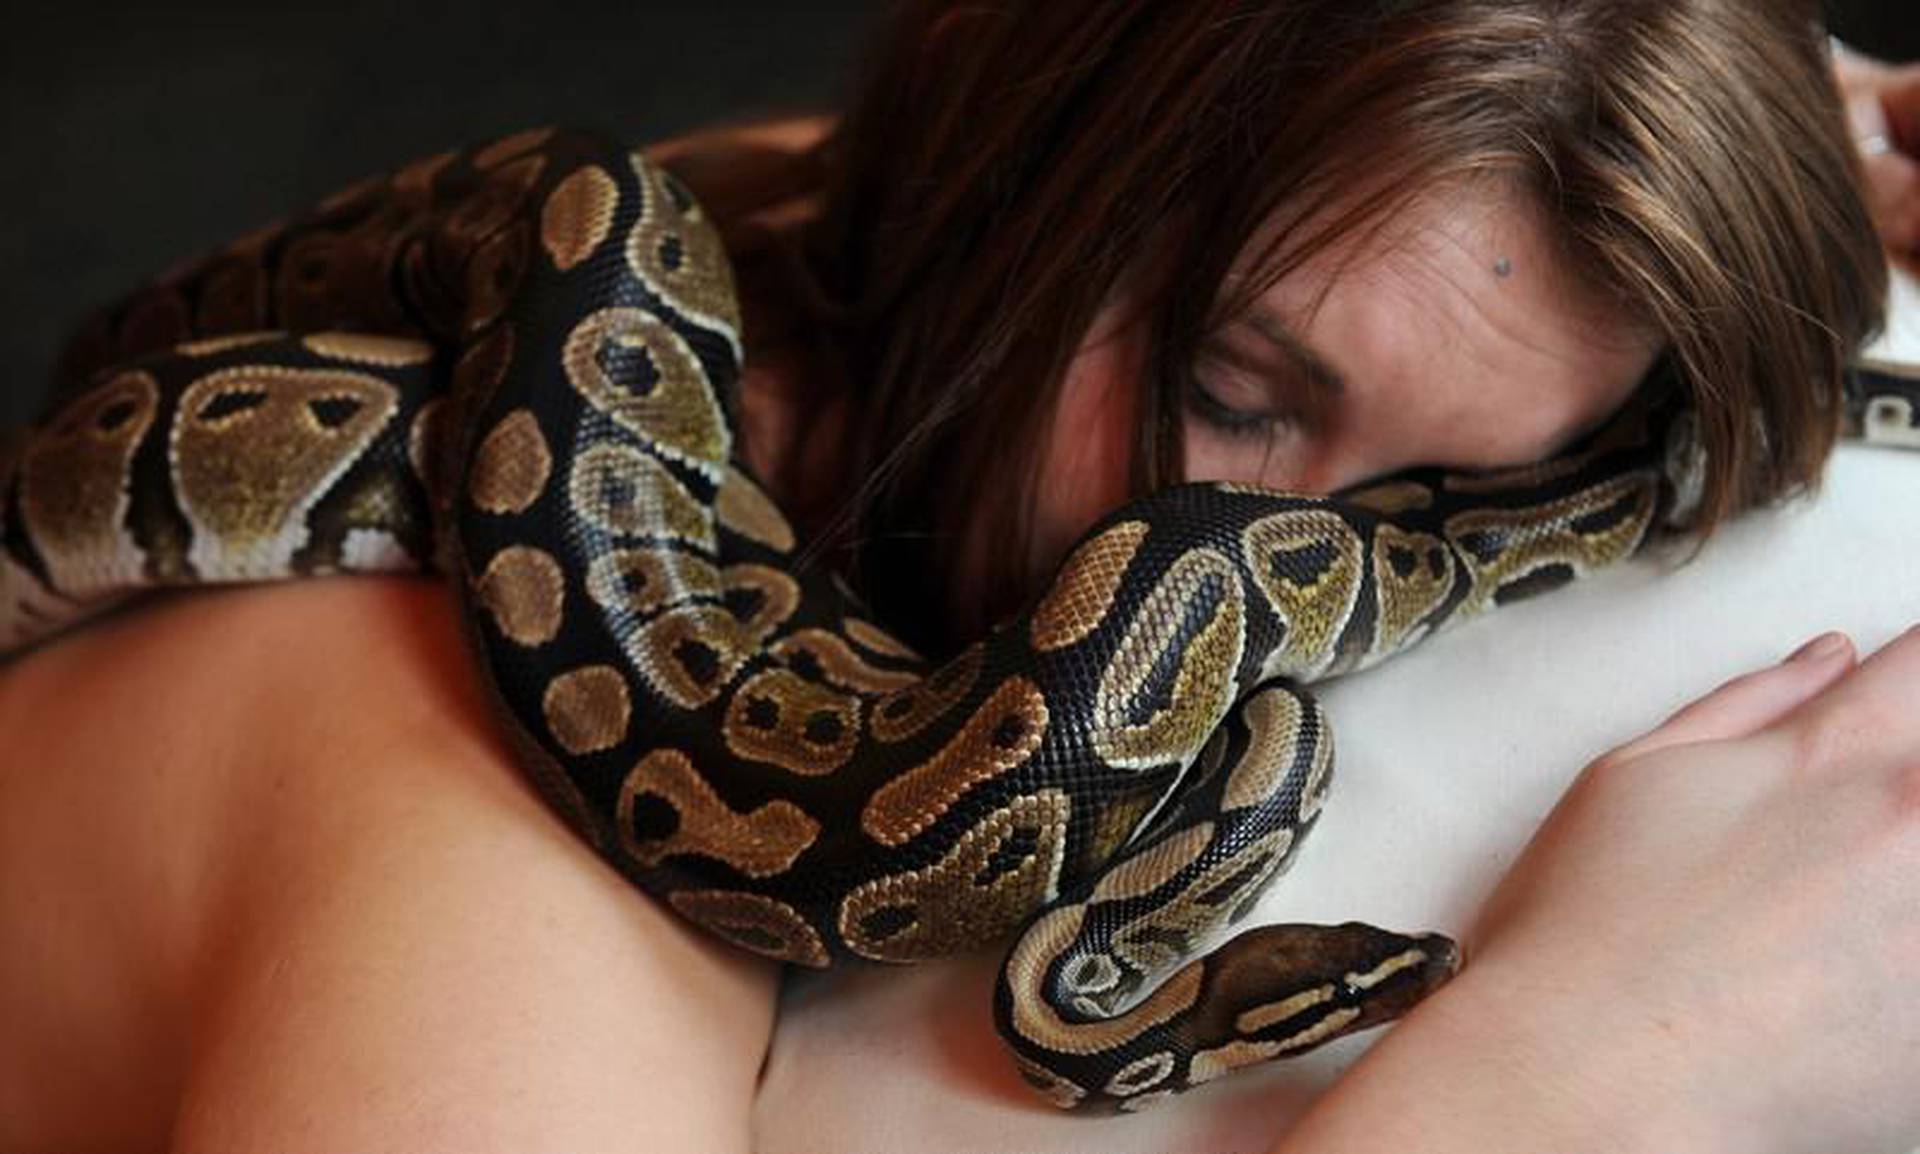 Женщина анаконда. Анаконда питон и женщина. Фотосессия со змеями. Девушка змея. Девушка с удавом.